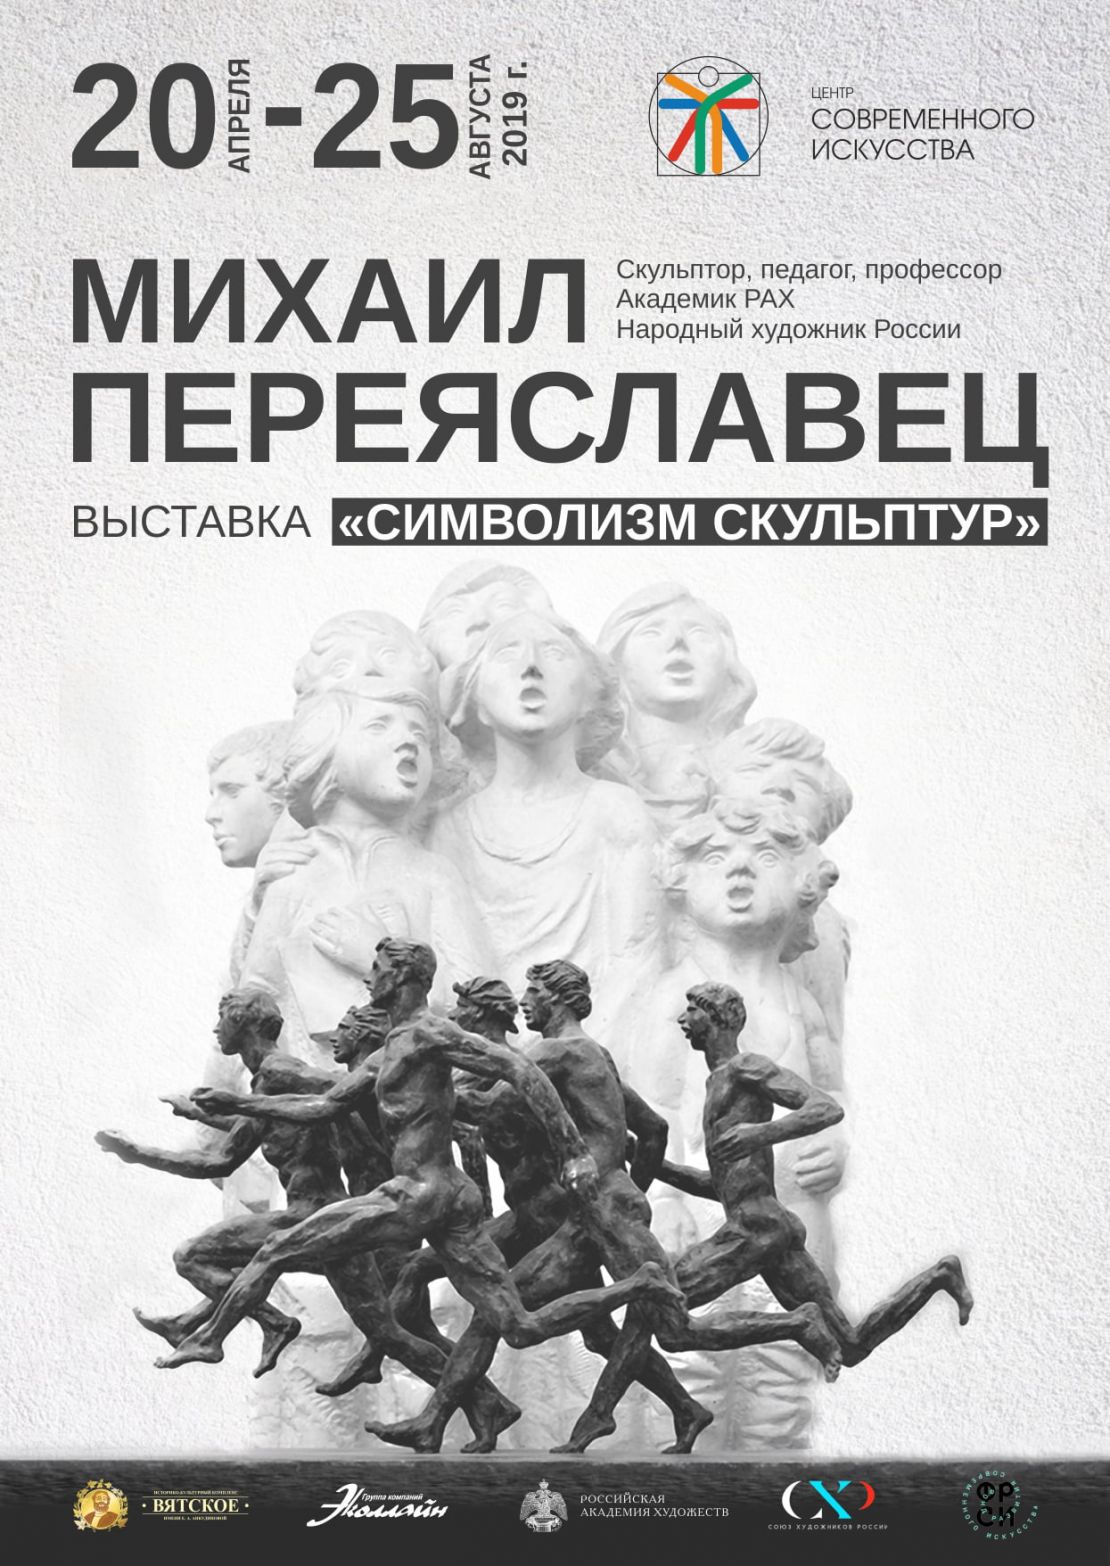 «Символизм скульптур» Михаила Переяславца 